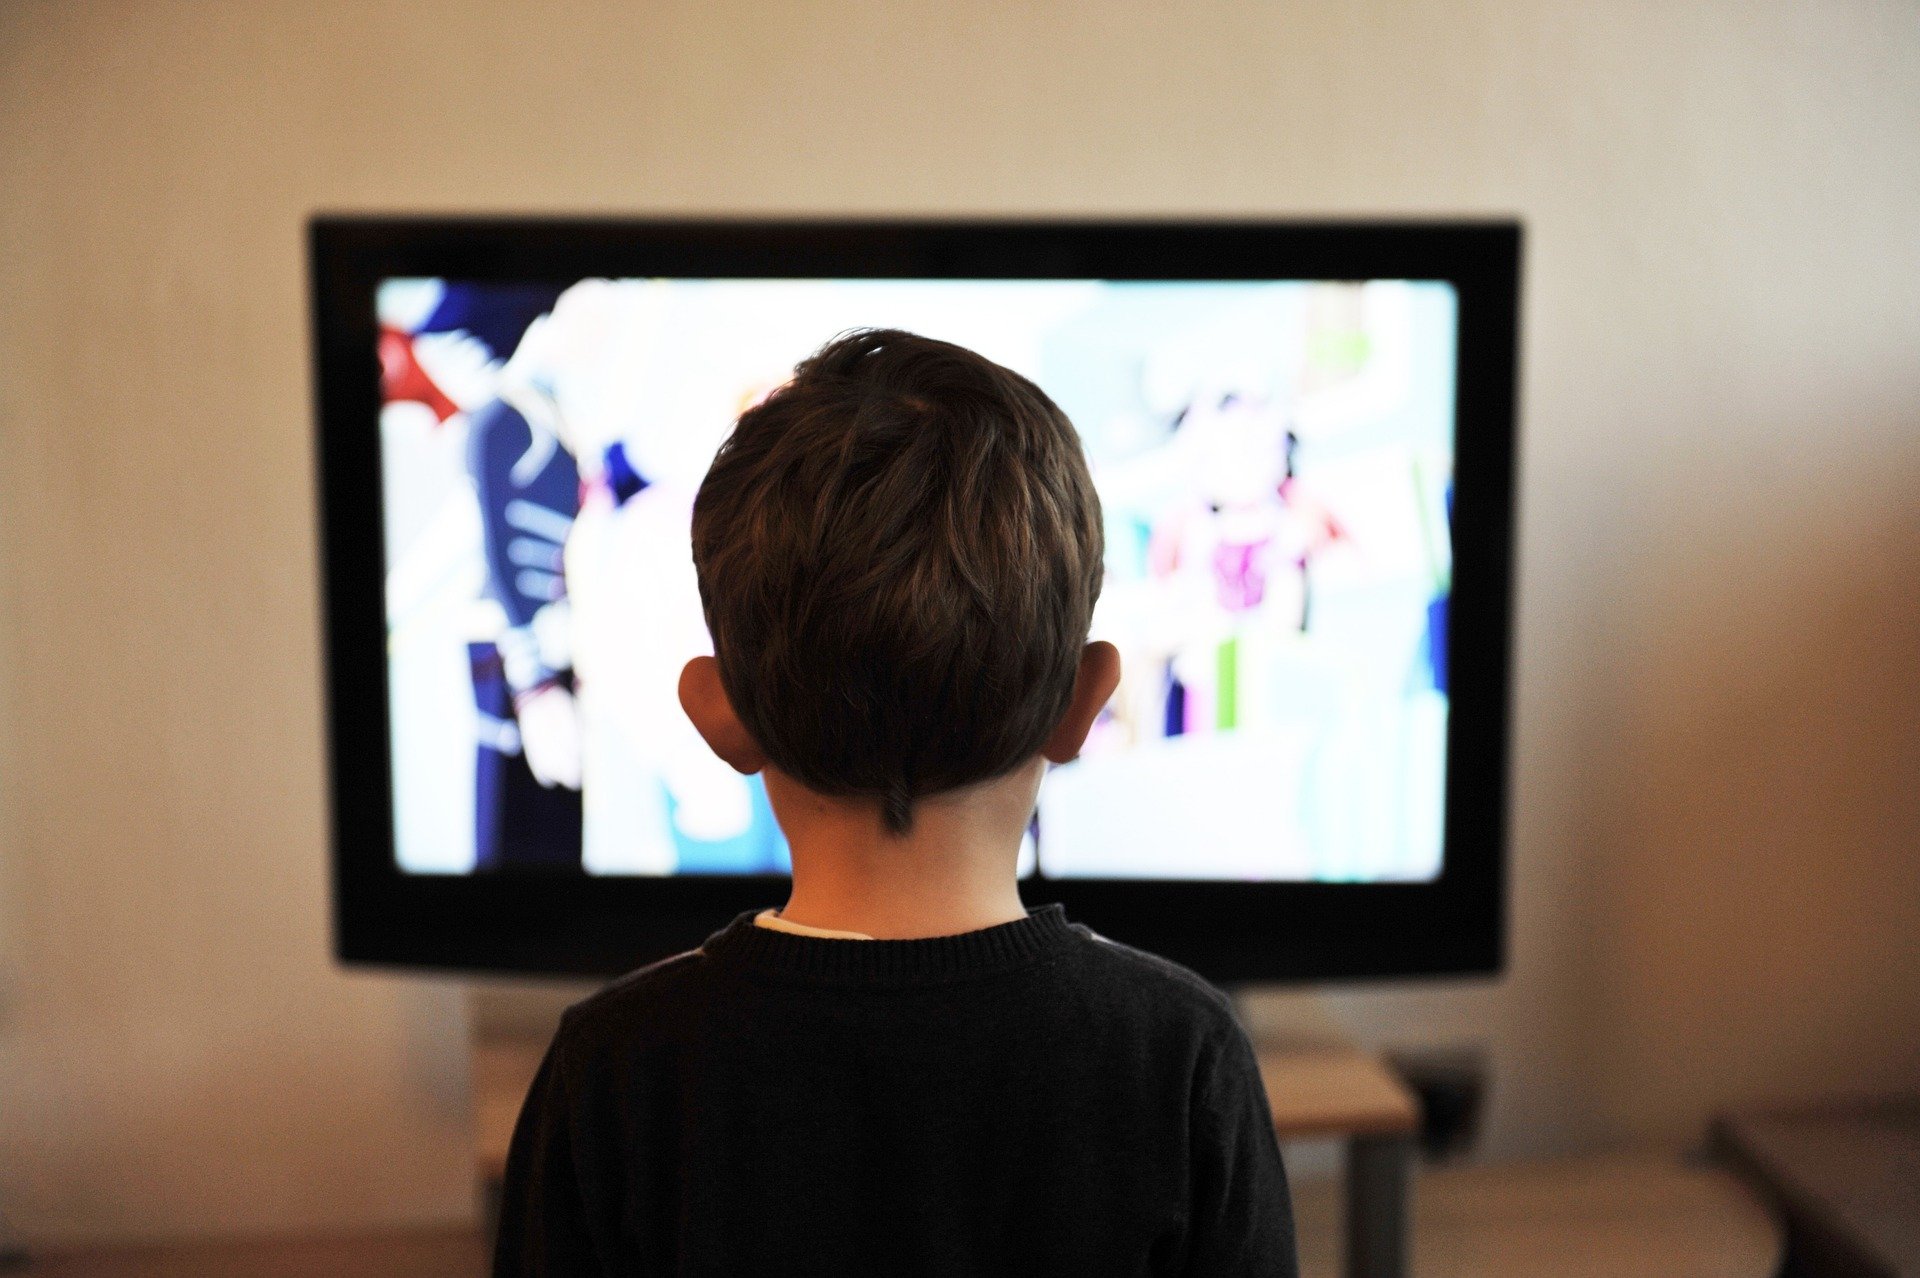 Un noi menor d'edat davant de la televisió, en una imatge d'arxiu / PIXABAY